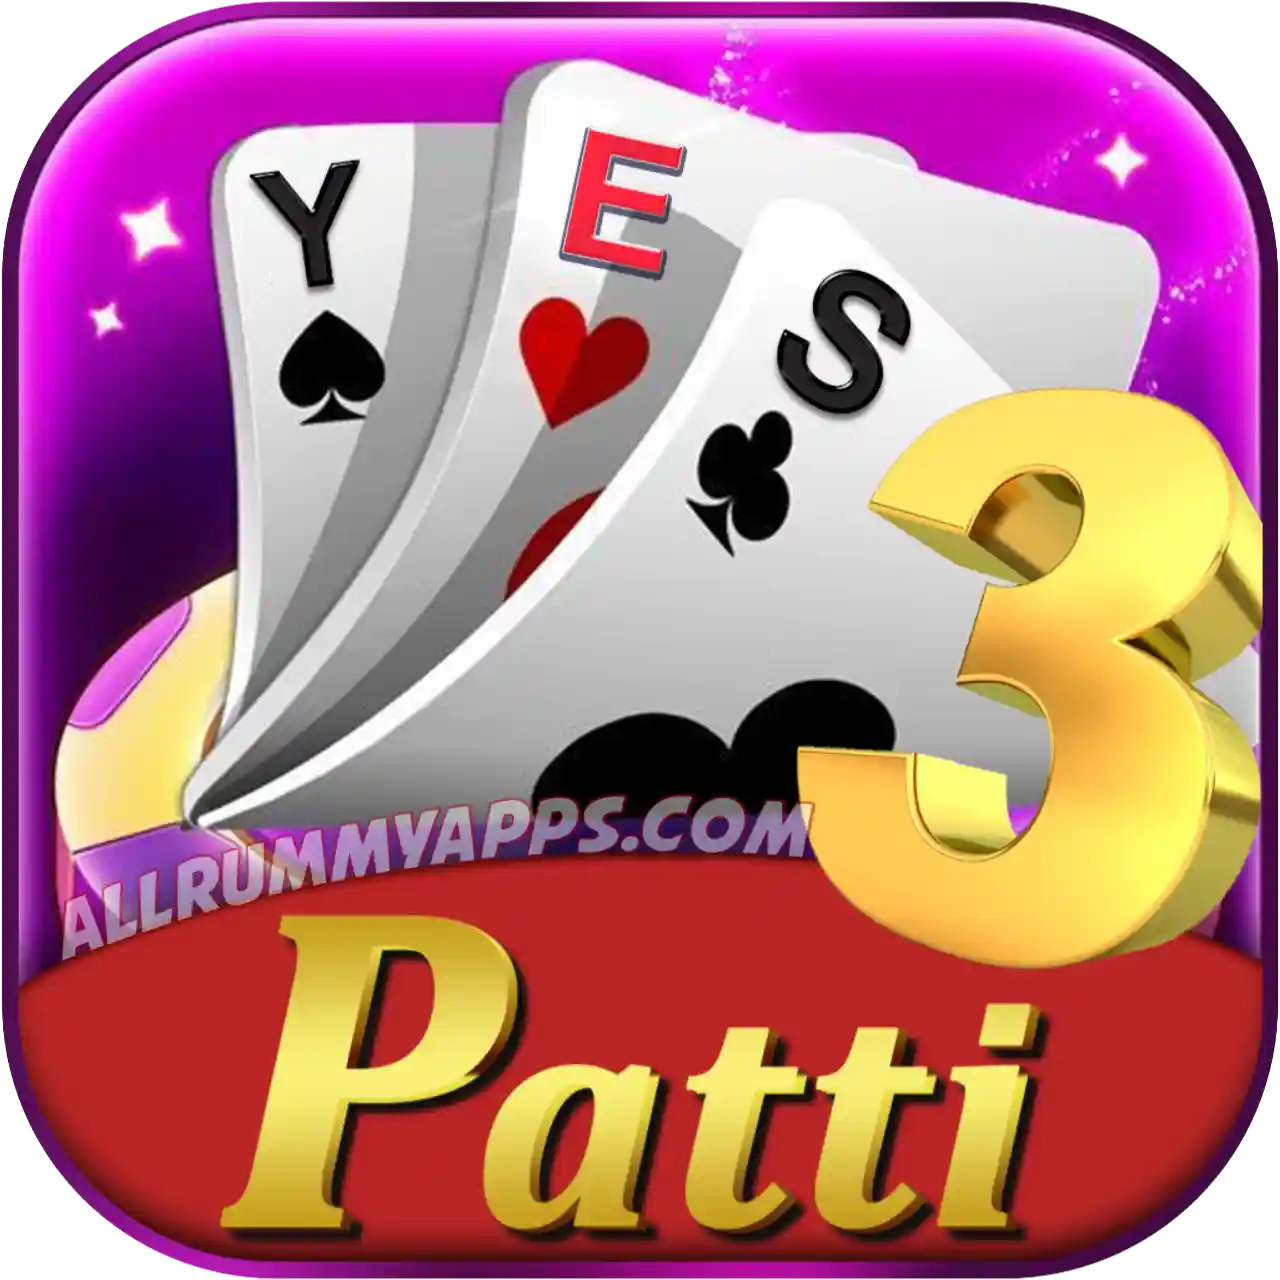 Yes 3 Patti - All Rummy App